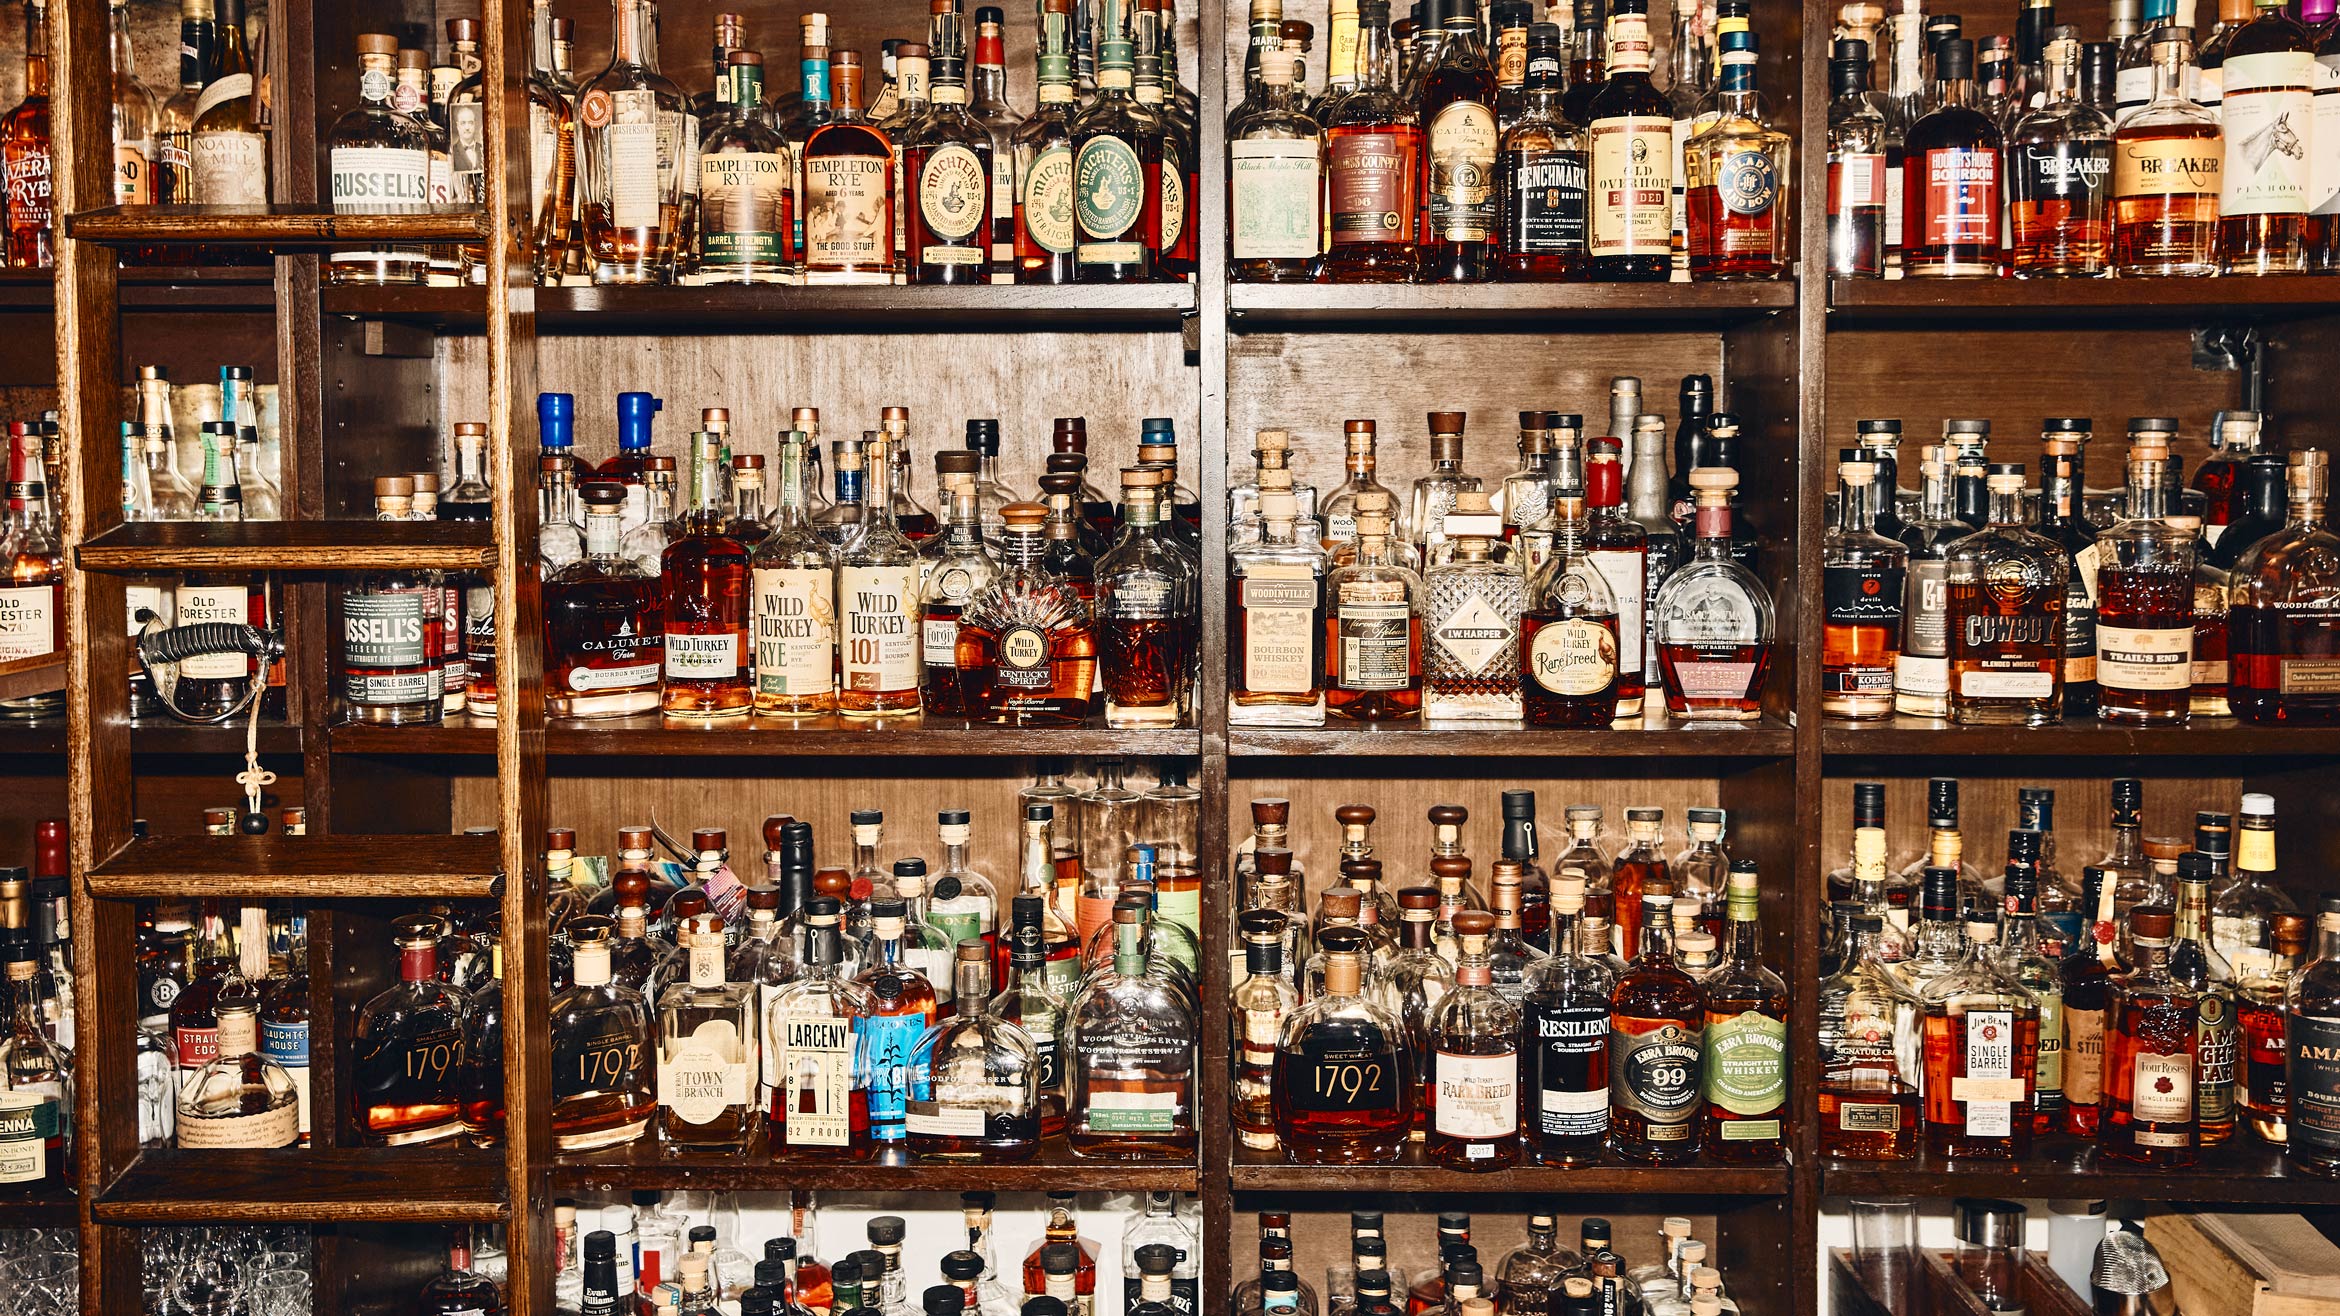 Shelves filled with bottles of liquor